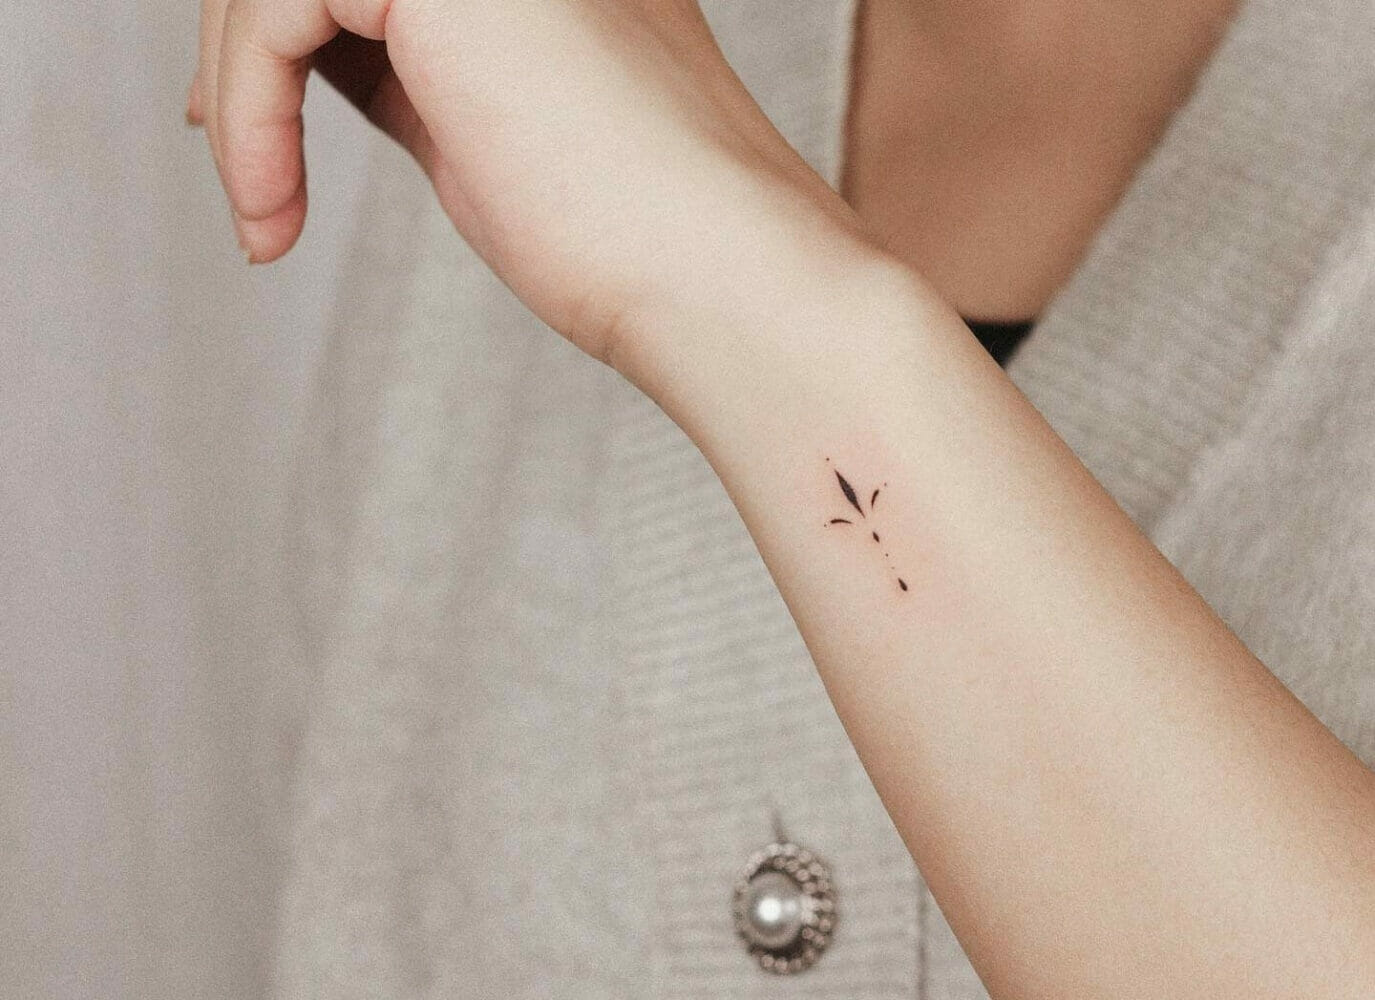 Hình xăm đẹp ở bắp tay cho các bạn nữ cá tính  Inspiration tattoos Mini  tattoos Xăm